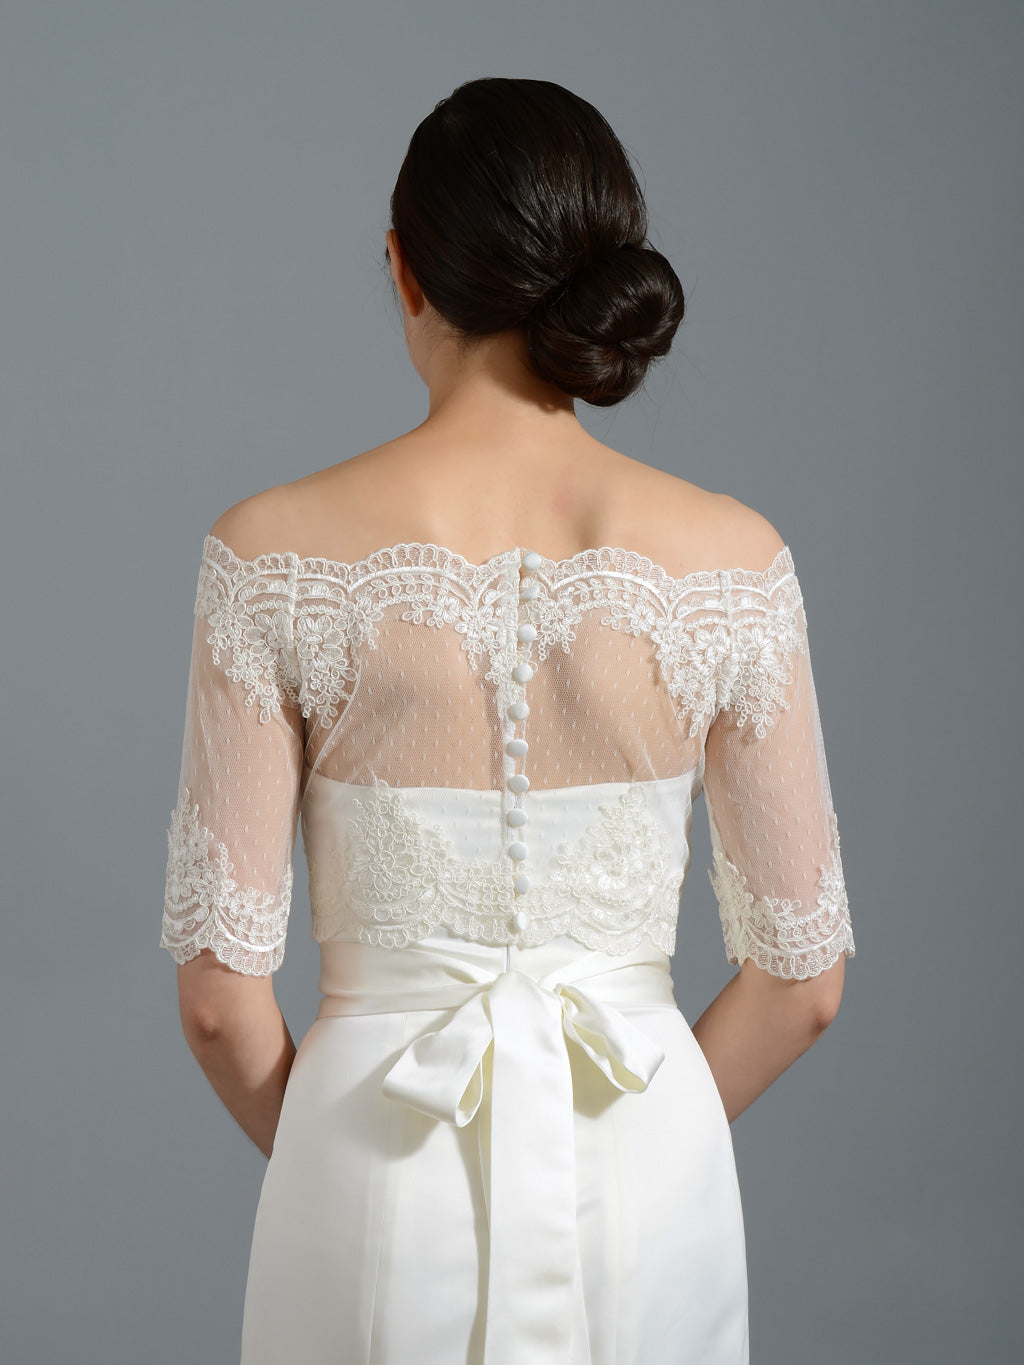 white lace jacket for wedding dress